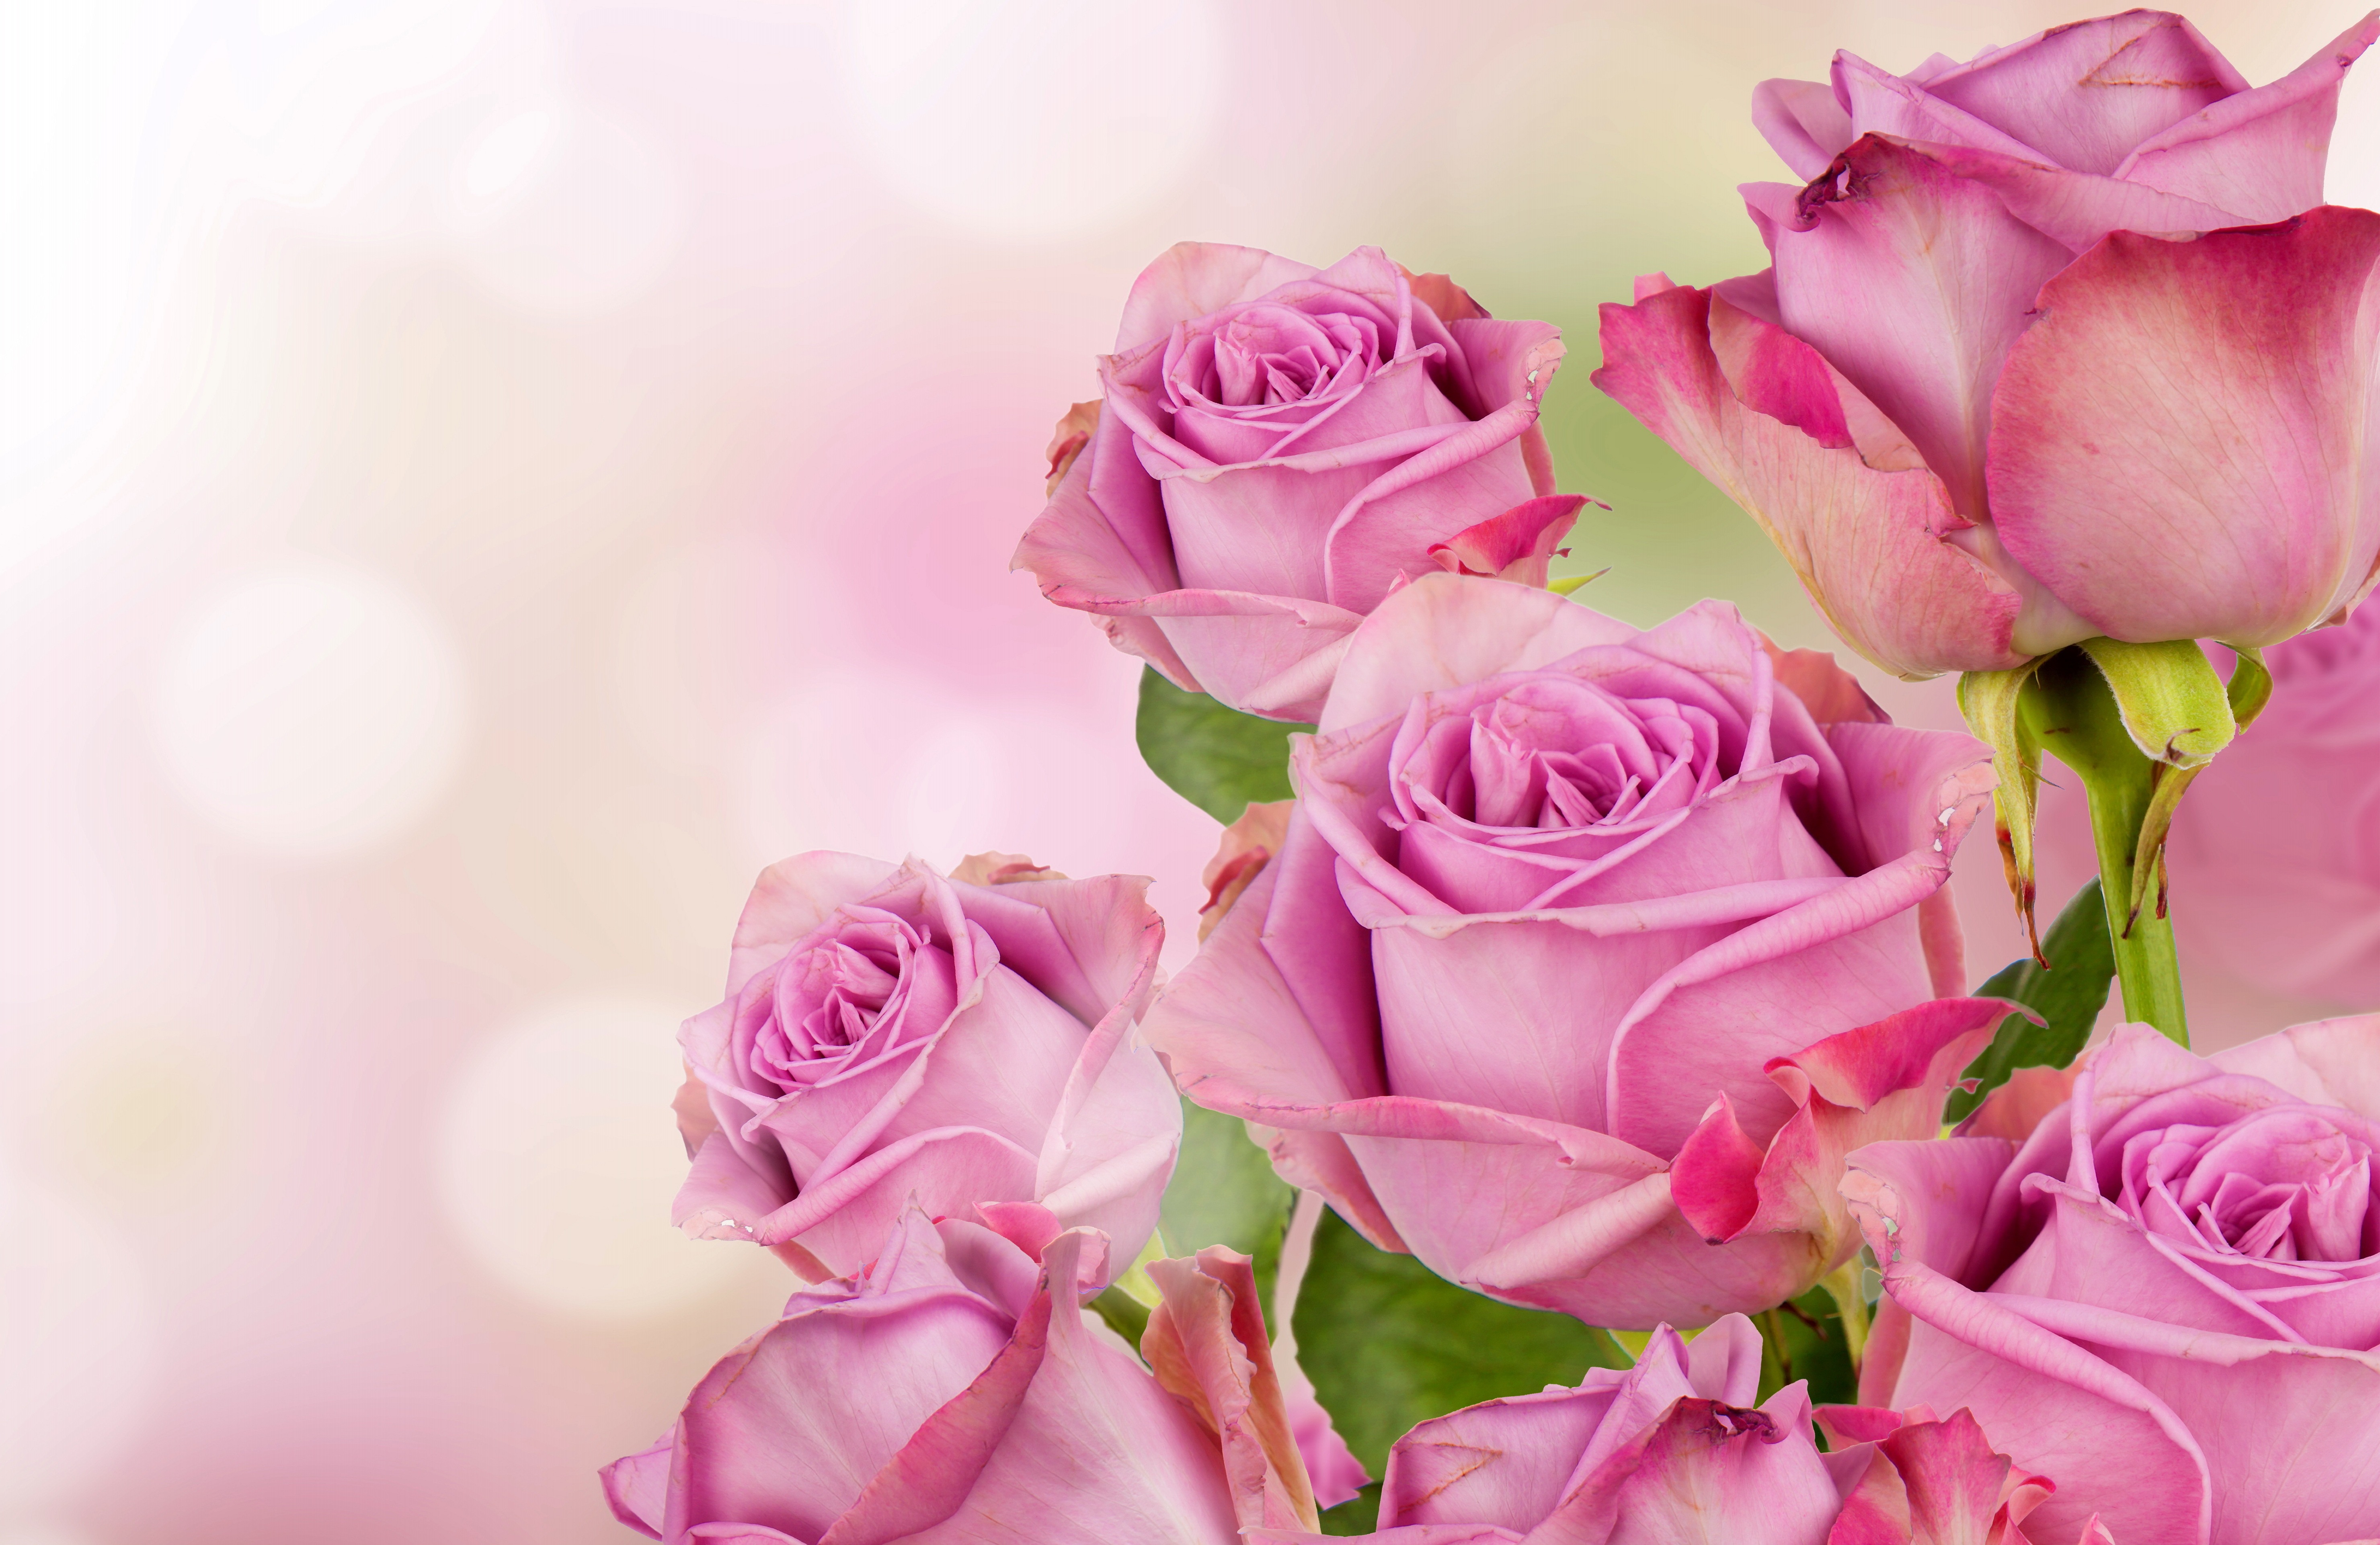 Музыкальное поздравления дочери от родителей. Открытка цветы. Розовые розы открытка. Розовые розы фон. Цветы сбоку.